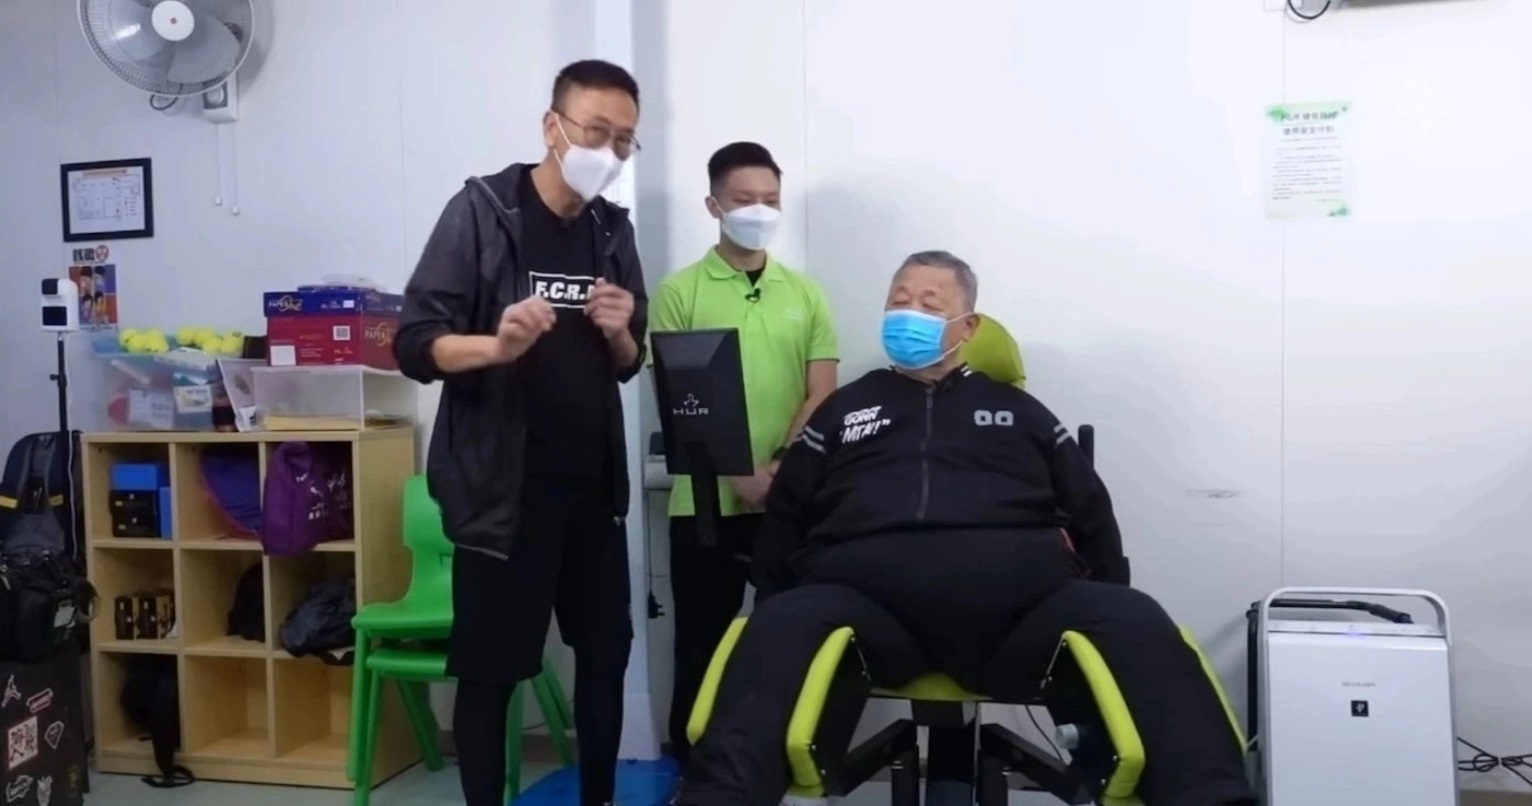 'Chu Bá Thông' Tần Hoàng giảm 30 kg để 'bảo toàn tính mạng' - Ảnh 2